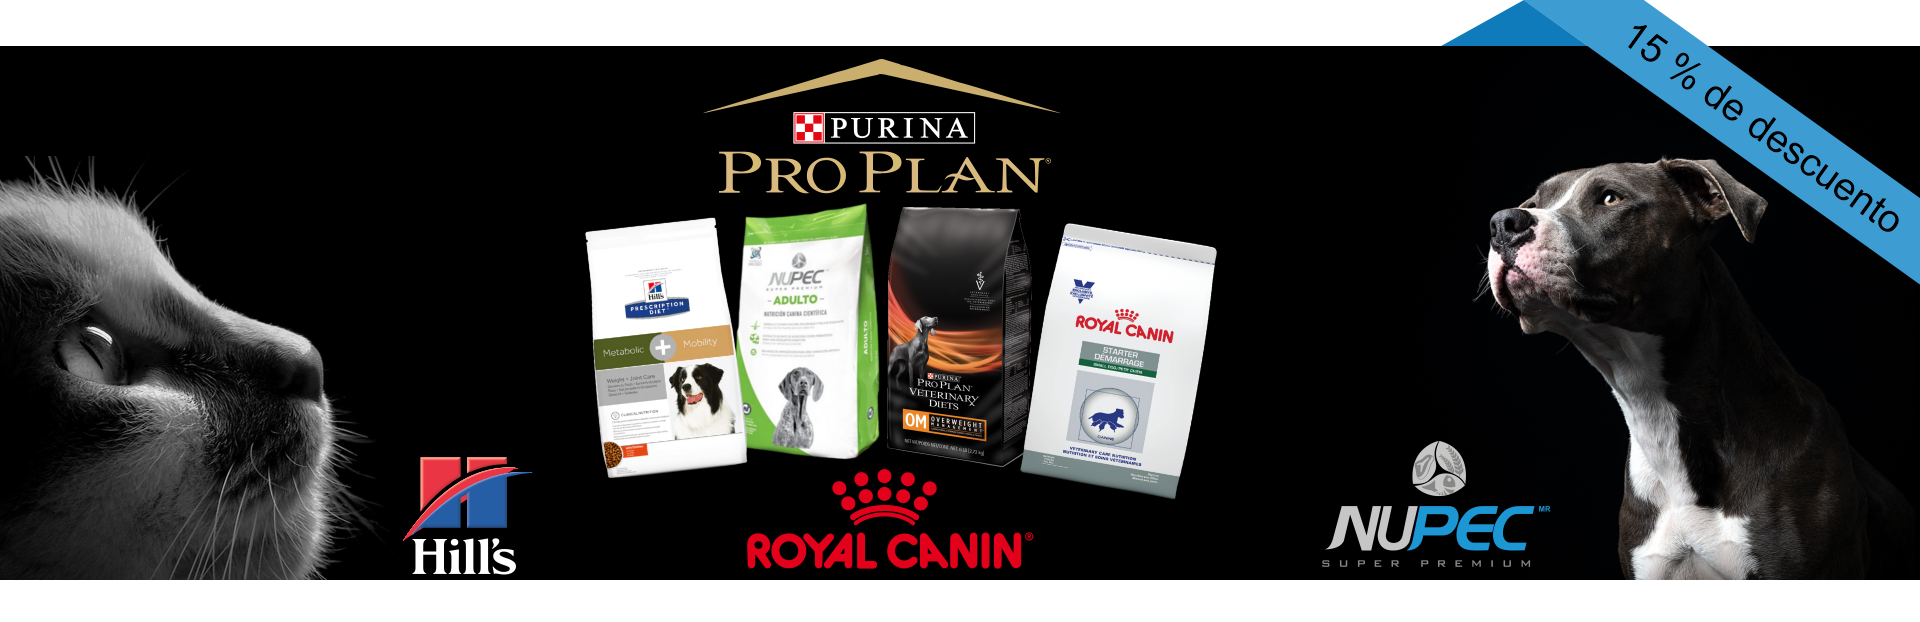 15% descuento productos marca Nupec, Purina, Hills y Royal Canin